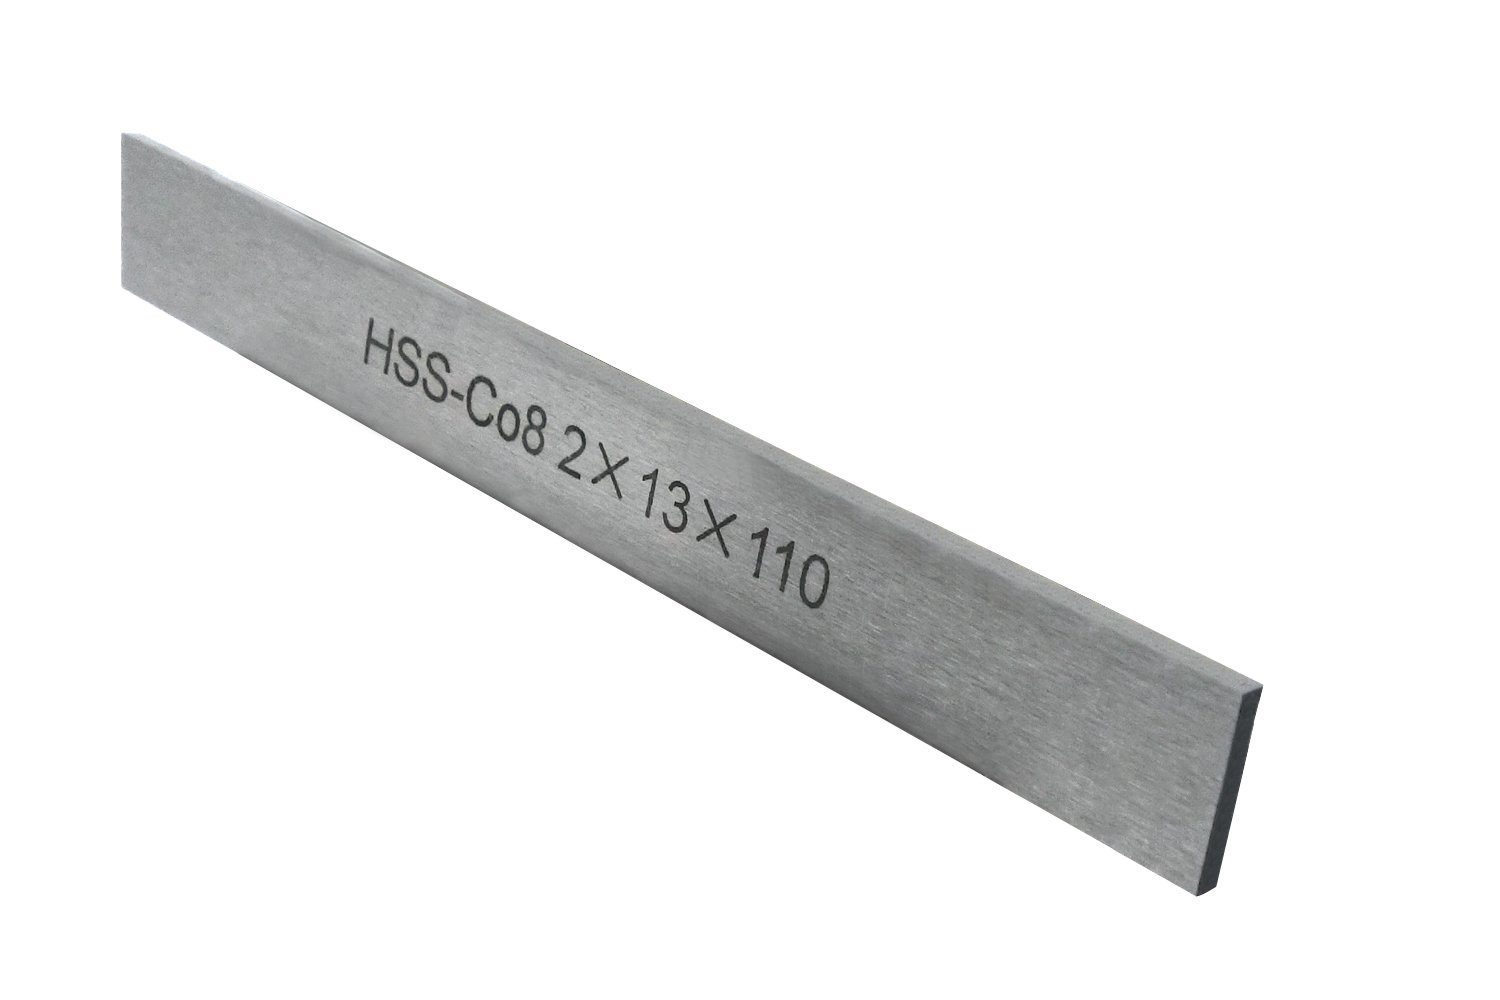 HSS-Ersatzmesser 2 x 13 x 110 mm (8 % Kobalt) für Abstechstahlhalter